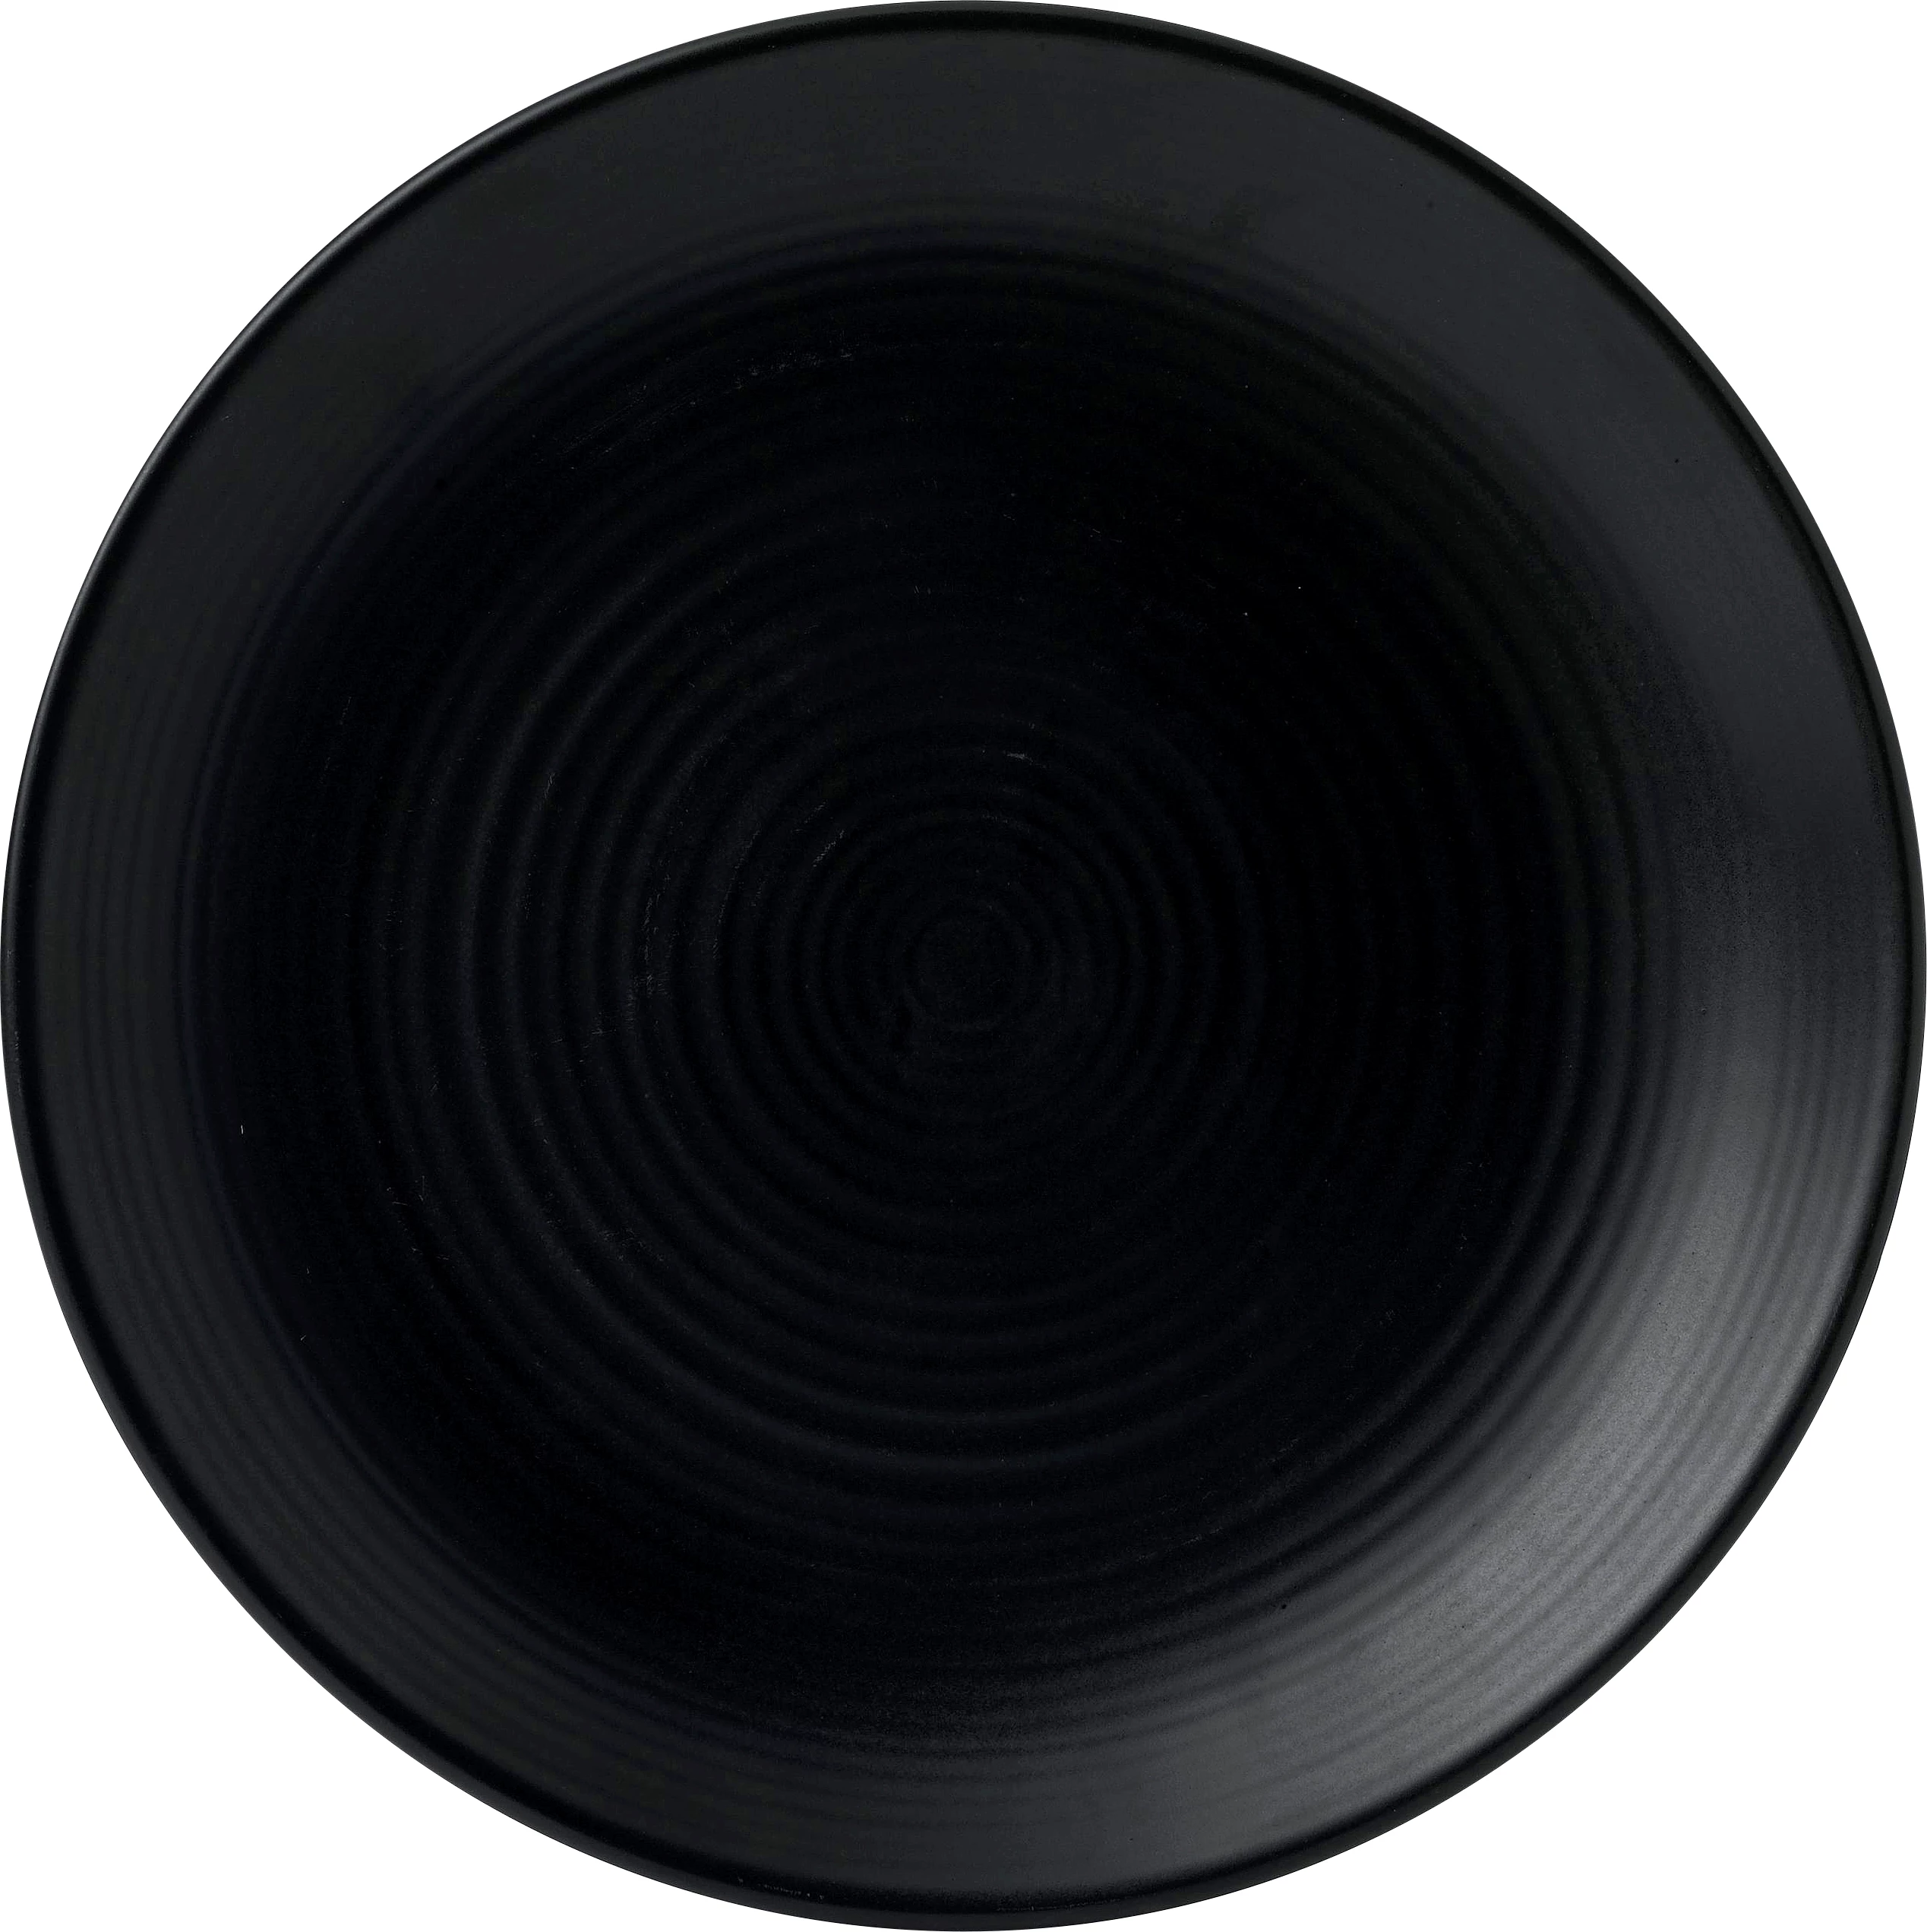 Dudson Evo Jet flad tallerken, sort, ø29,5 cm